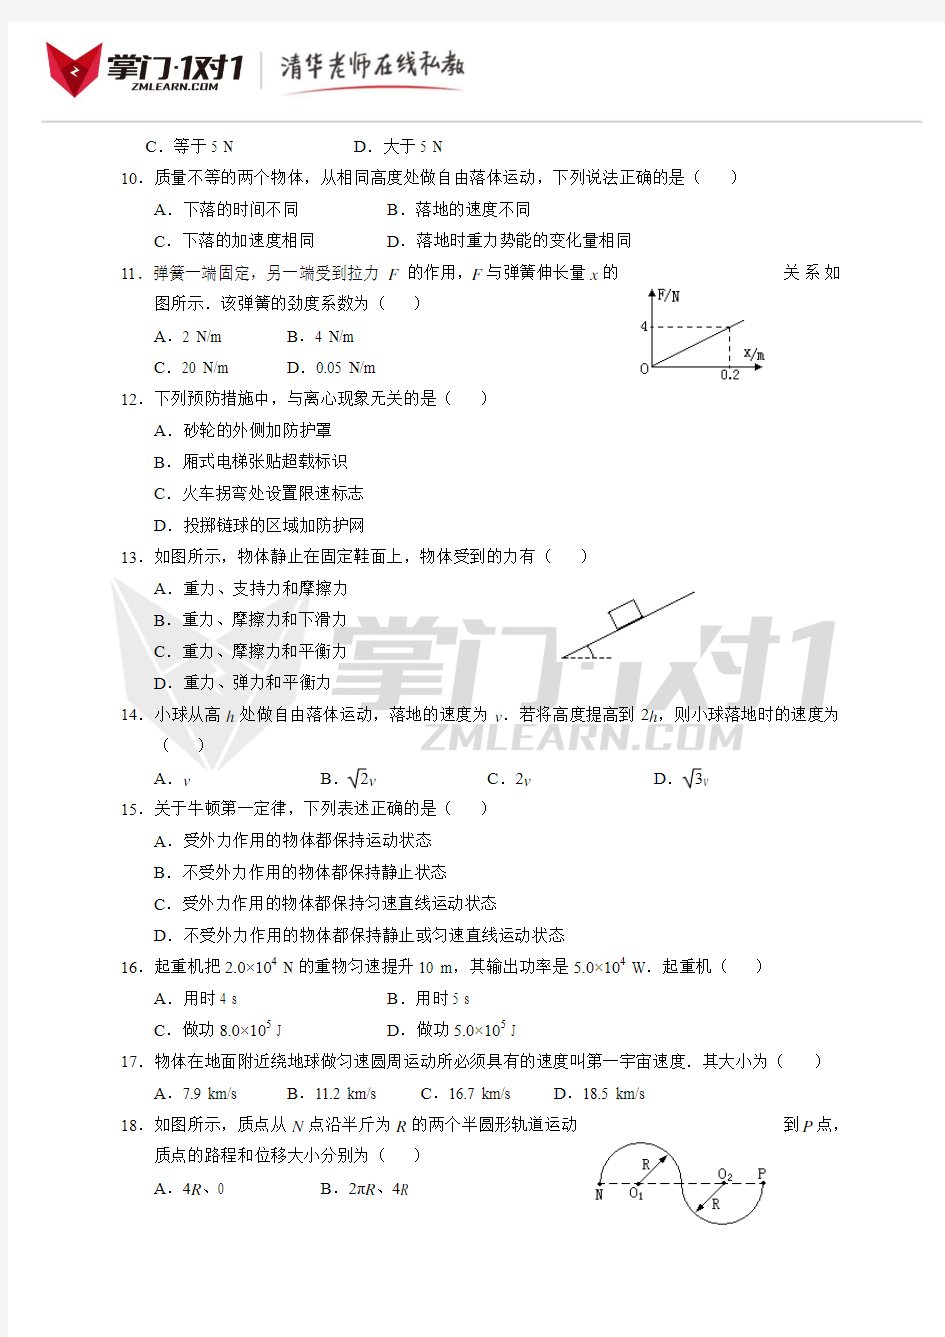 2014年6月广东省普通高中学业水平考试物理试卷